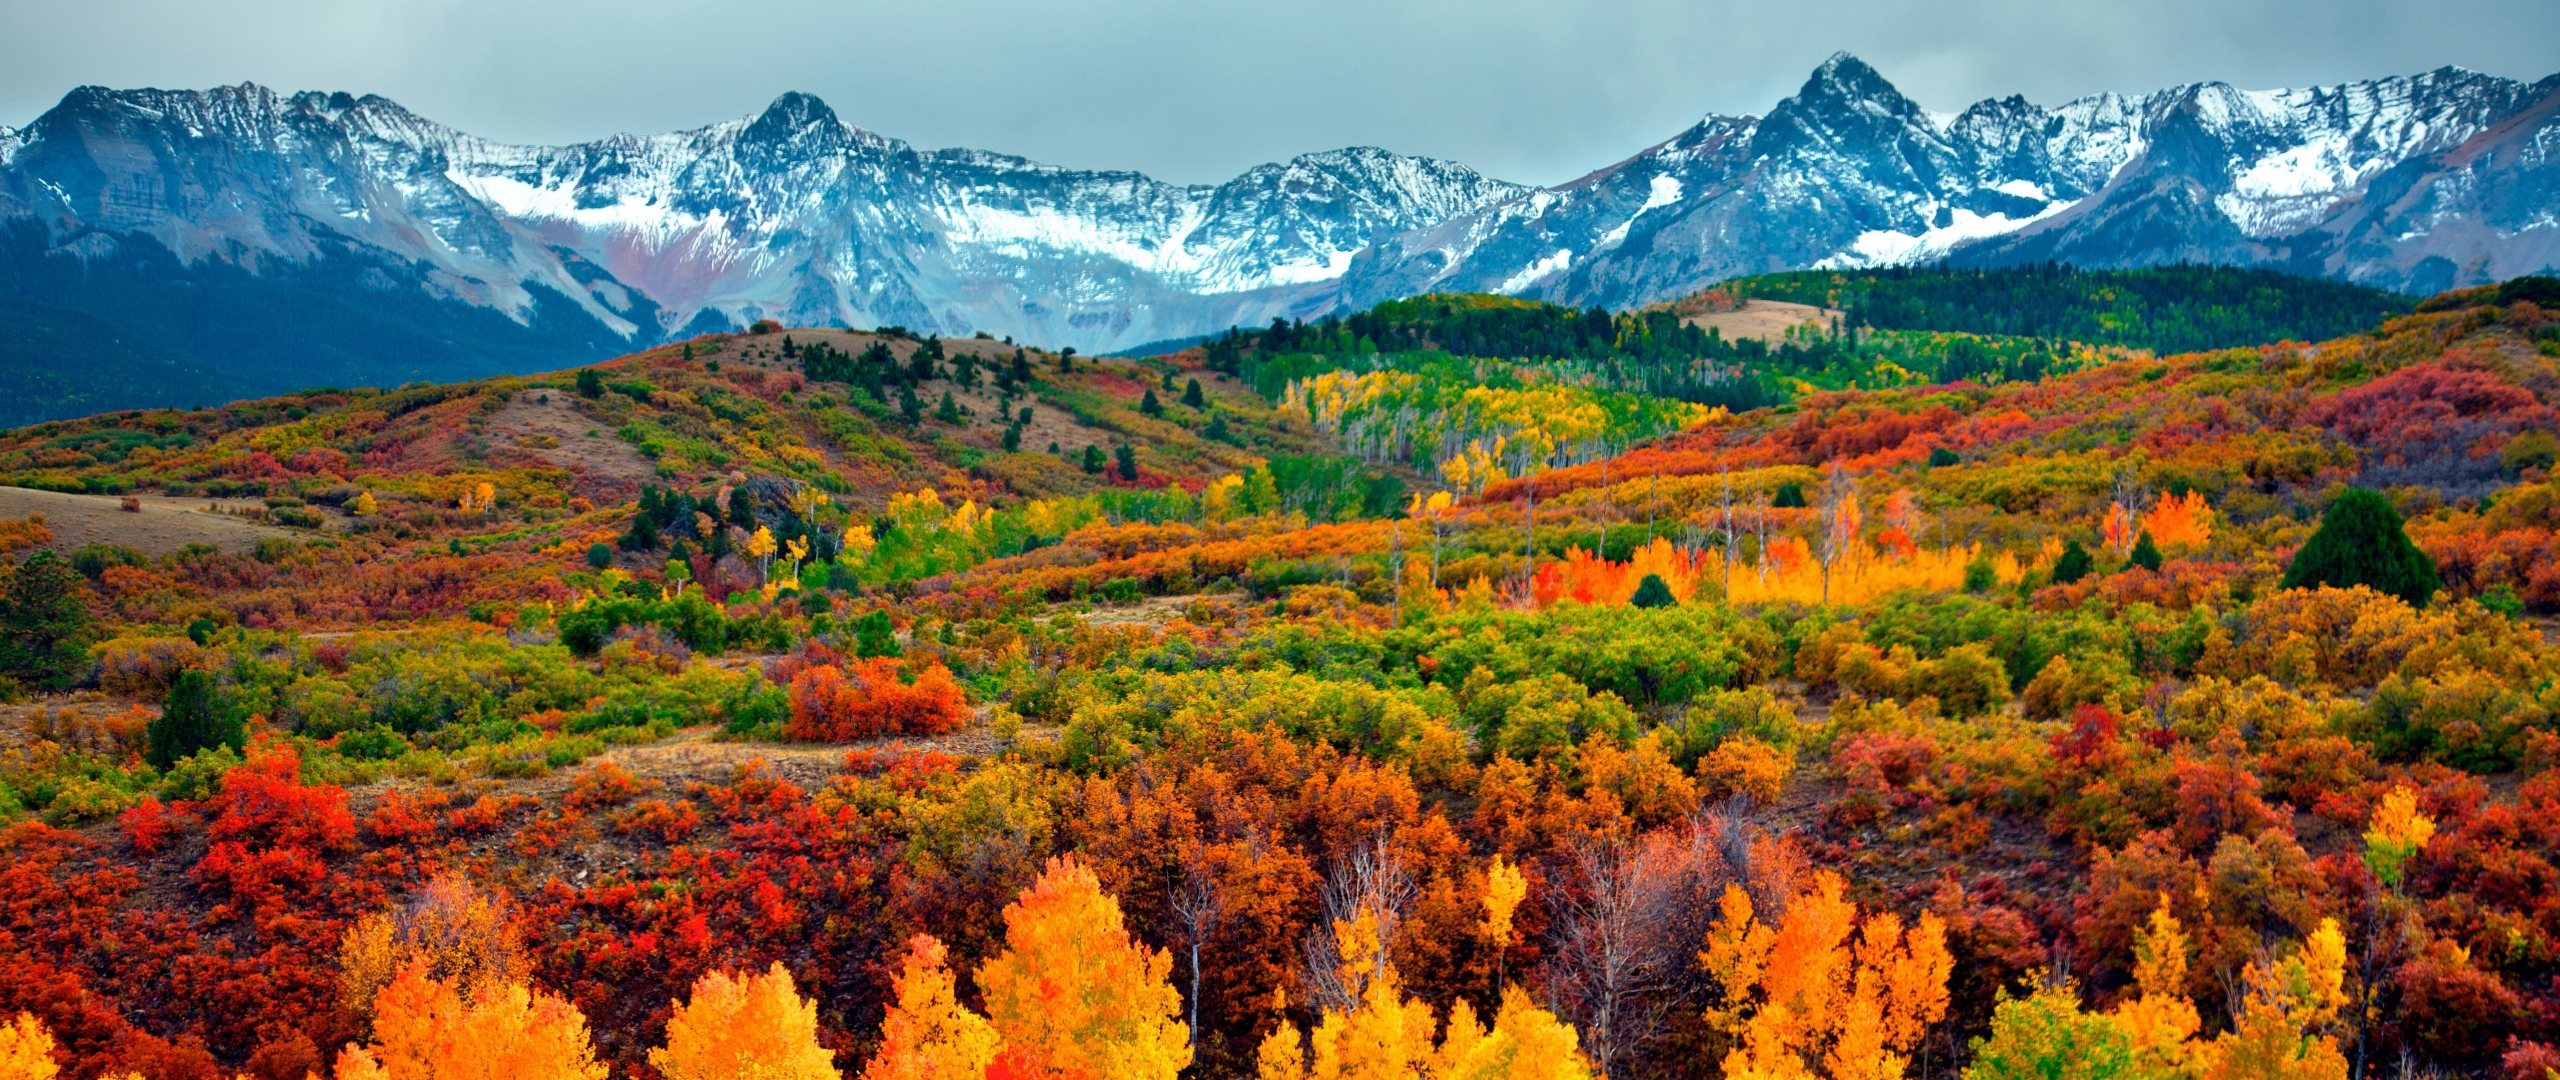 Colorado Fall Colors 2018 2560x1080 Wallpaper